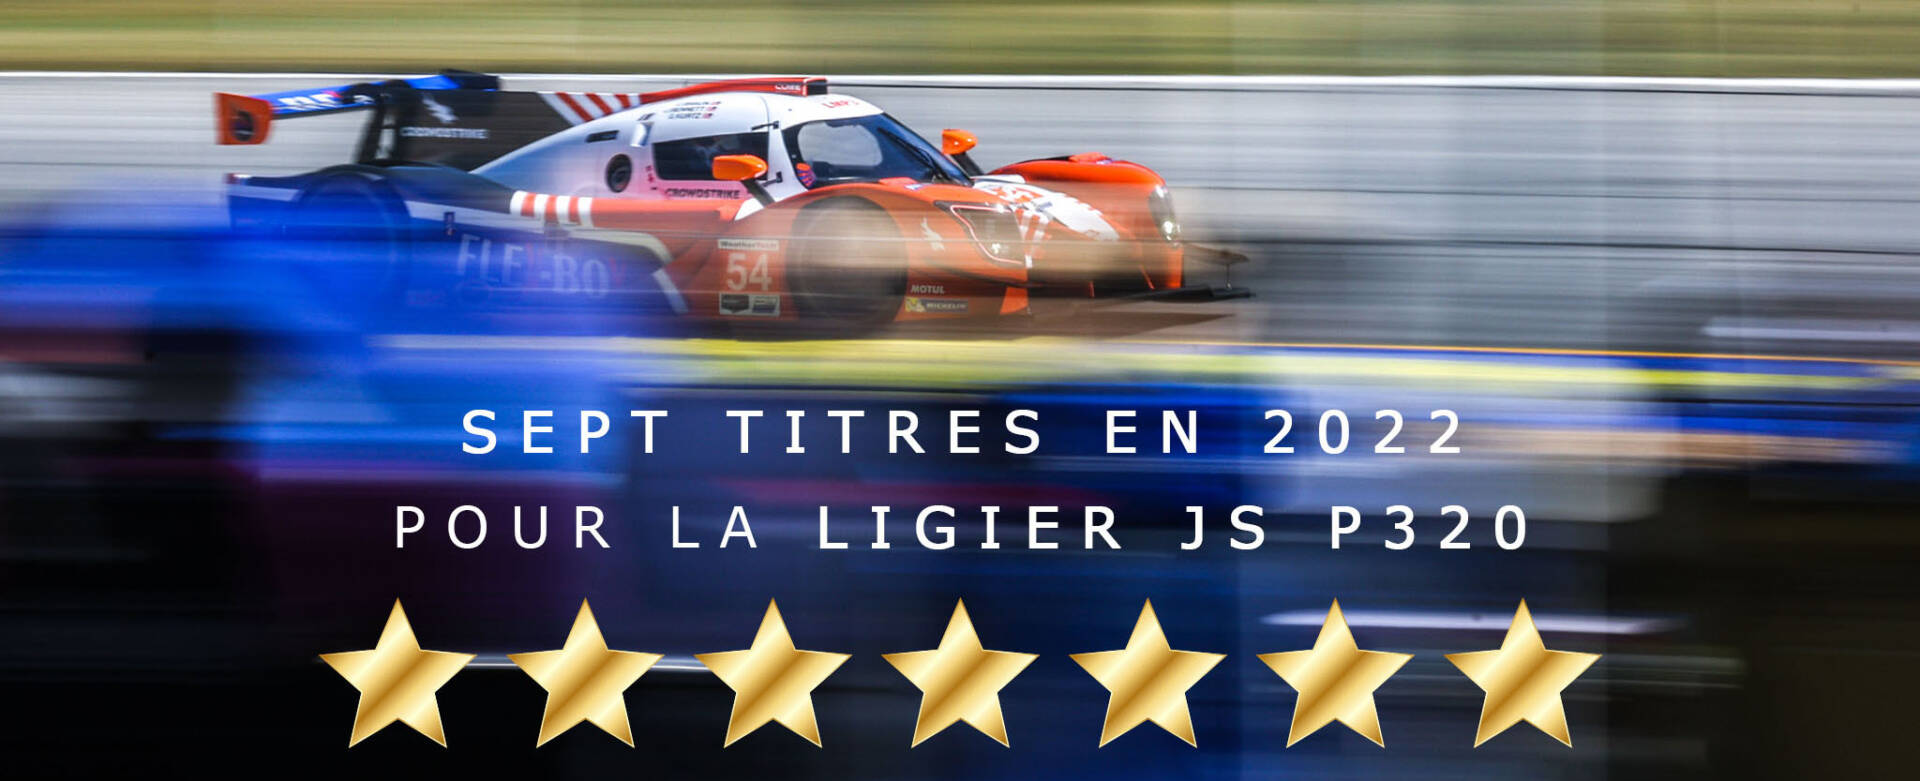 Ligier JS P320 sept championnats gagnés en 2022